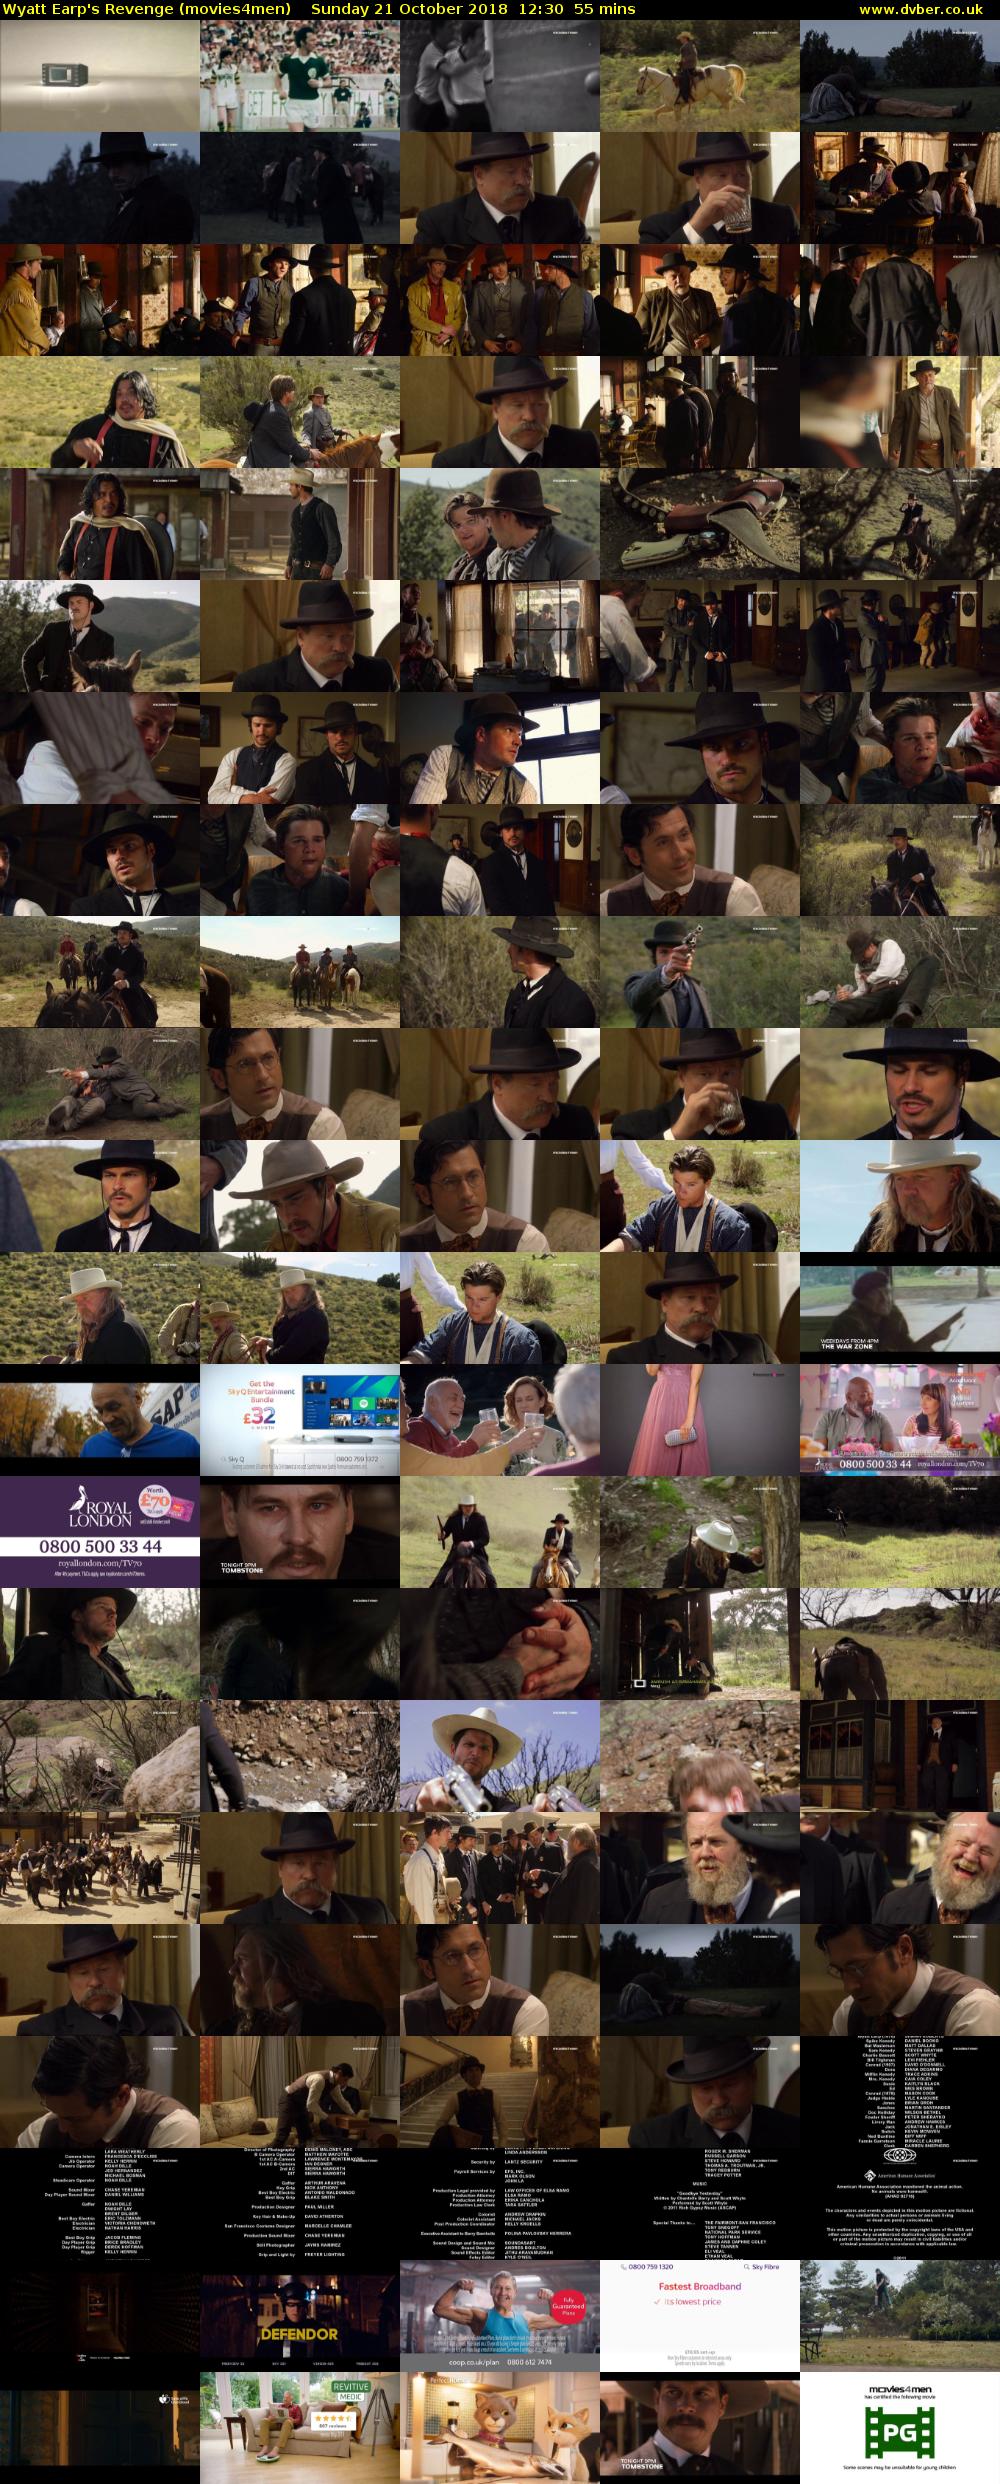 Wyatt Earp's Revenge (movies4men) Sunday 21 October 2018 12:30 - 13:25